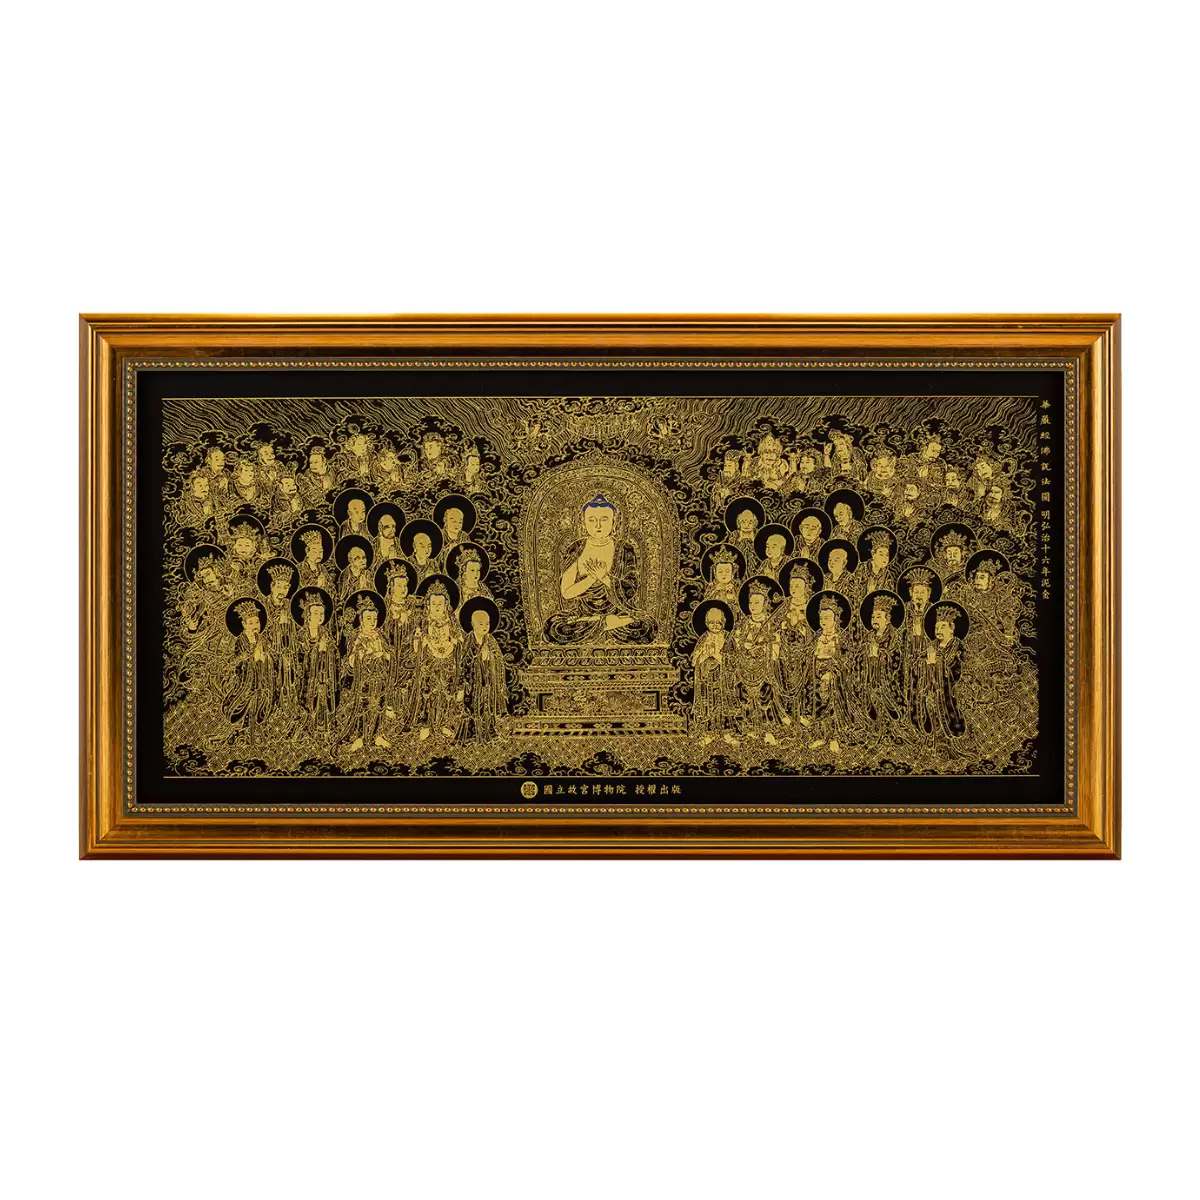 《僧伽林文化》畫心含框-華嚴經佛說法圖-明弘治十六年泥金